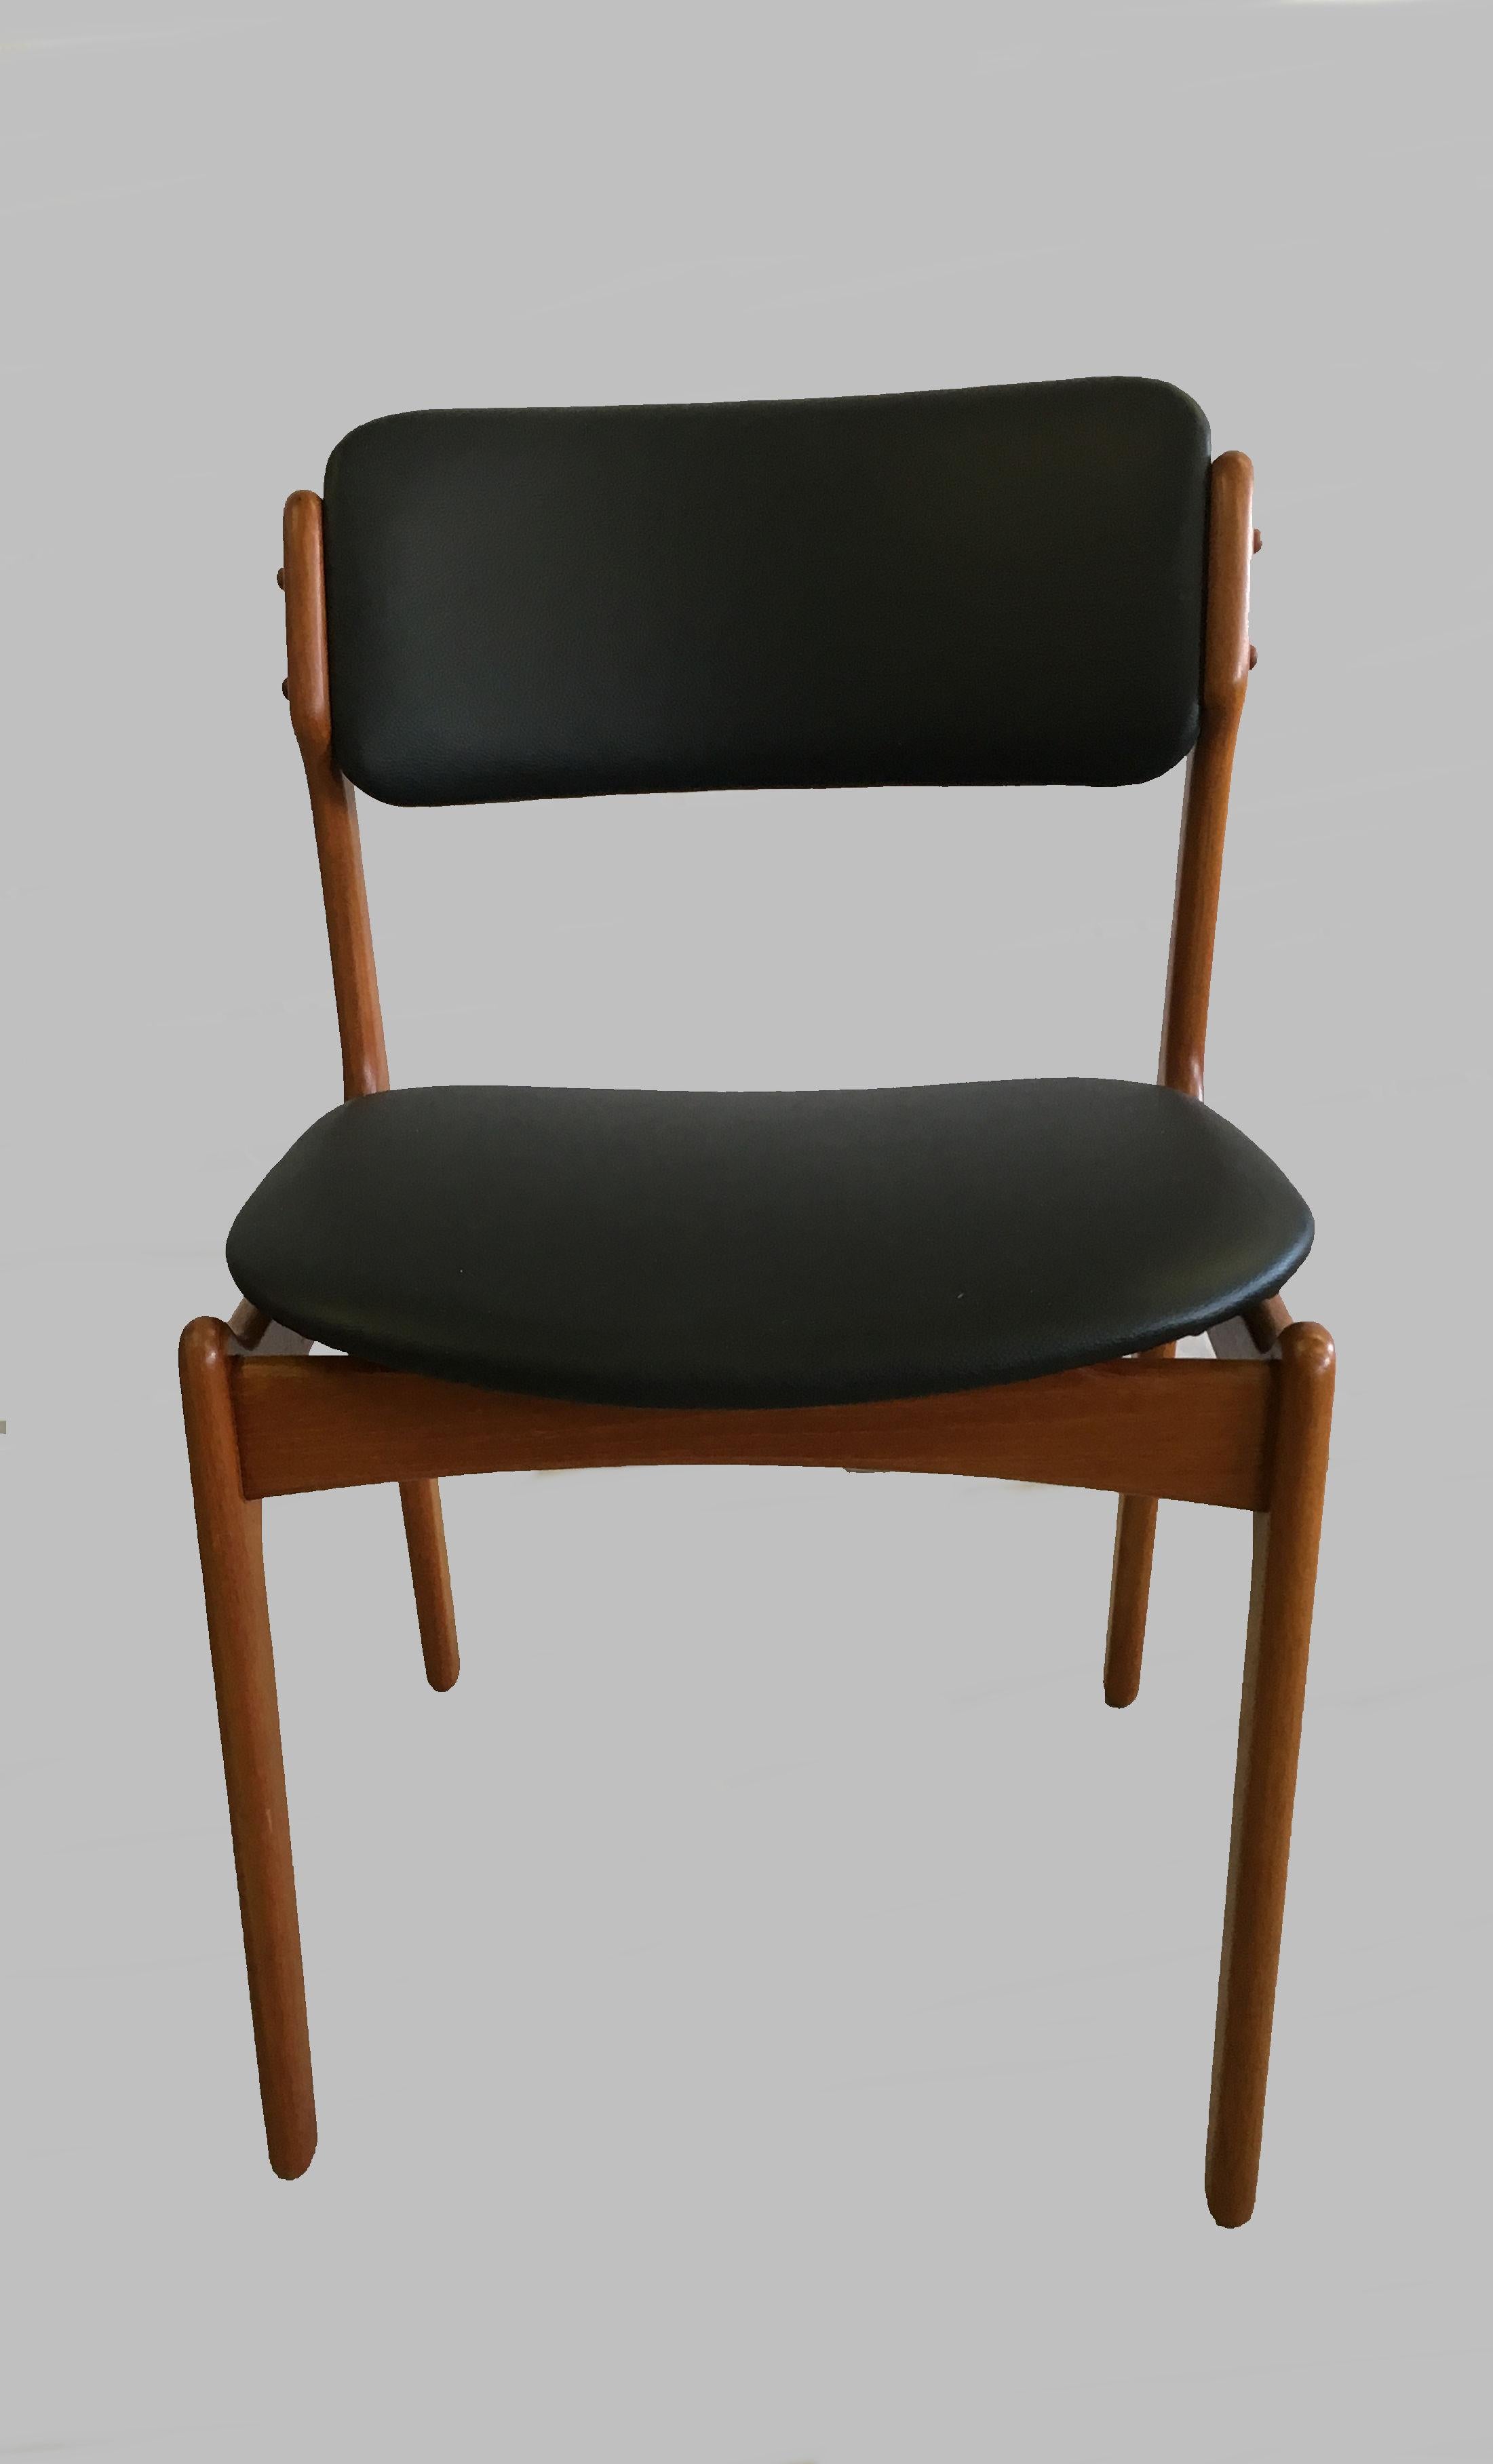 Ensemble de quatre chaises de salle à manger en teck des années 1960 avec assise flottante, conçu par Erik Buch pour Oddense Maskinsnedkeri en 1949.

Les chaises ont une construction simple mais solide avec des lignes élégantes et offrent une